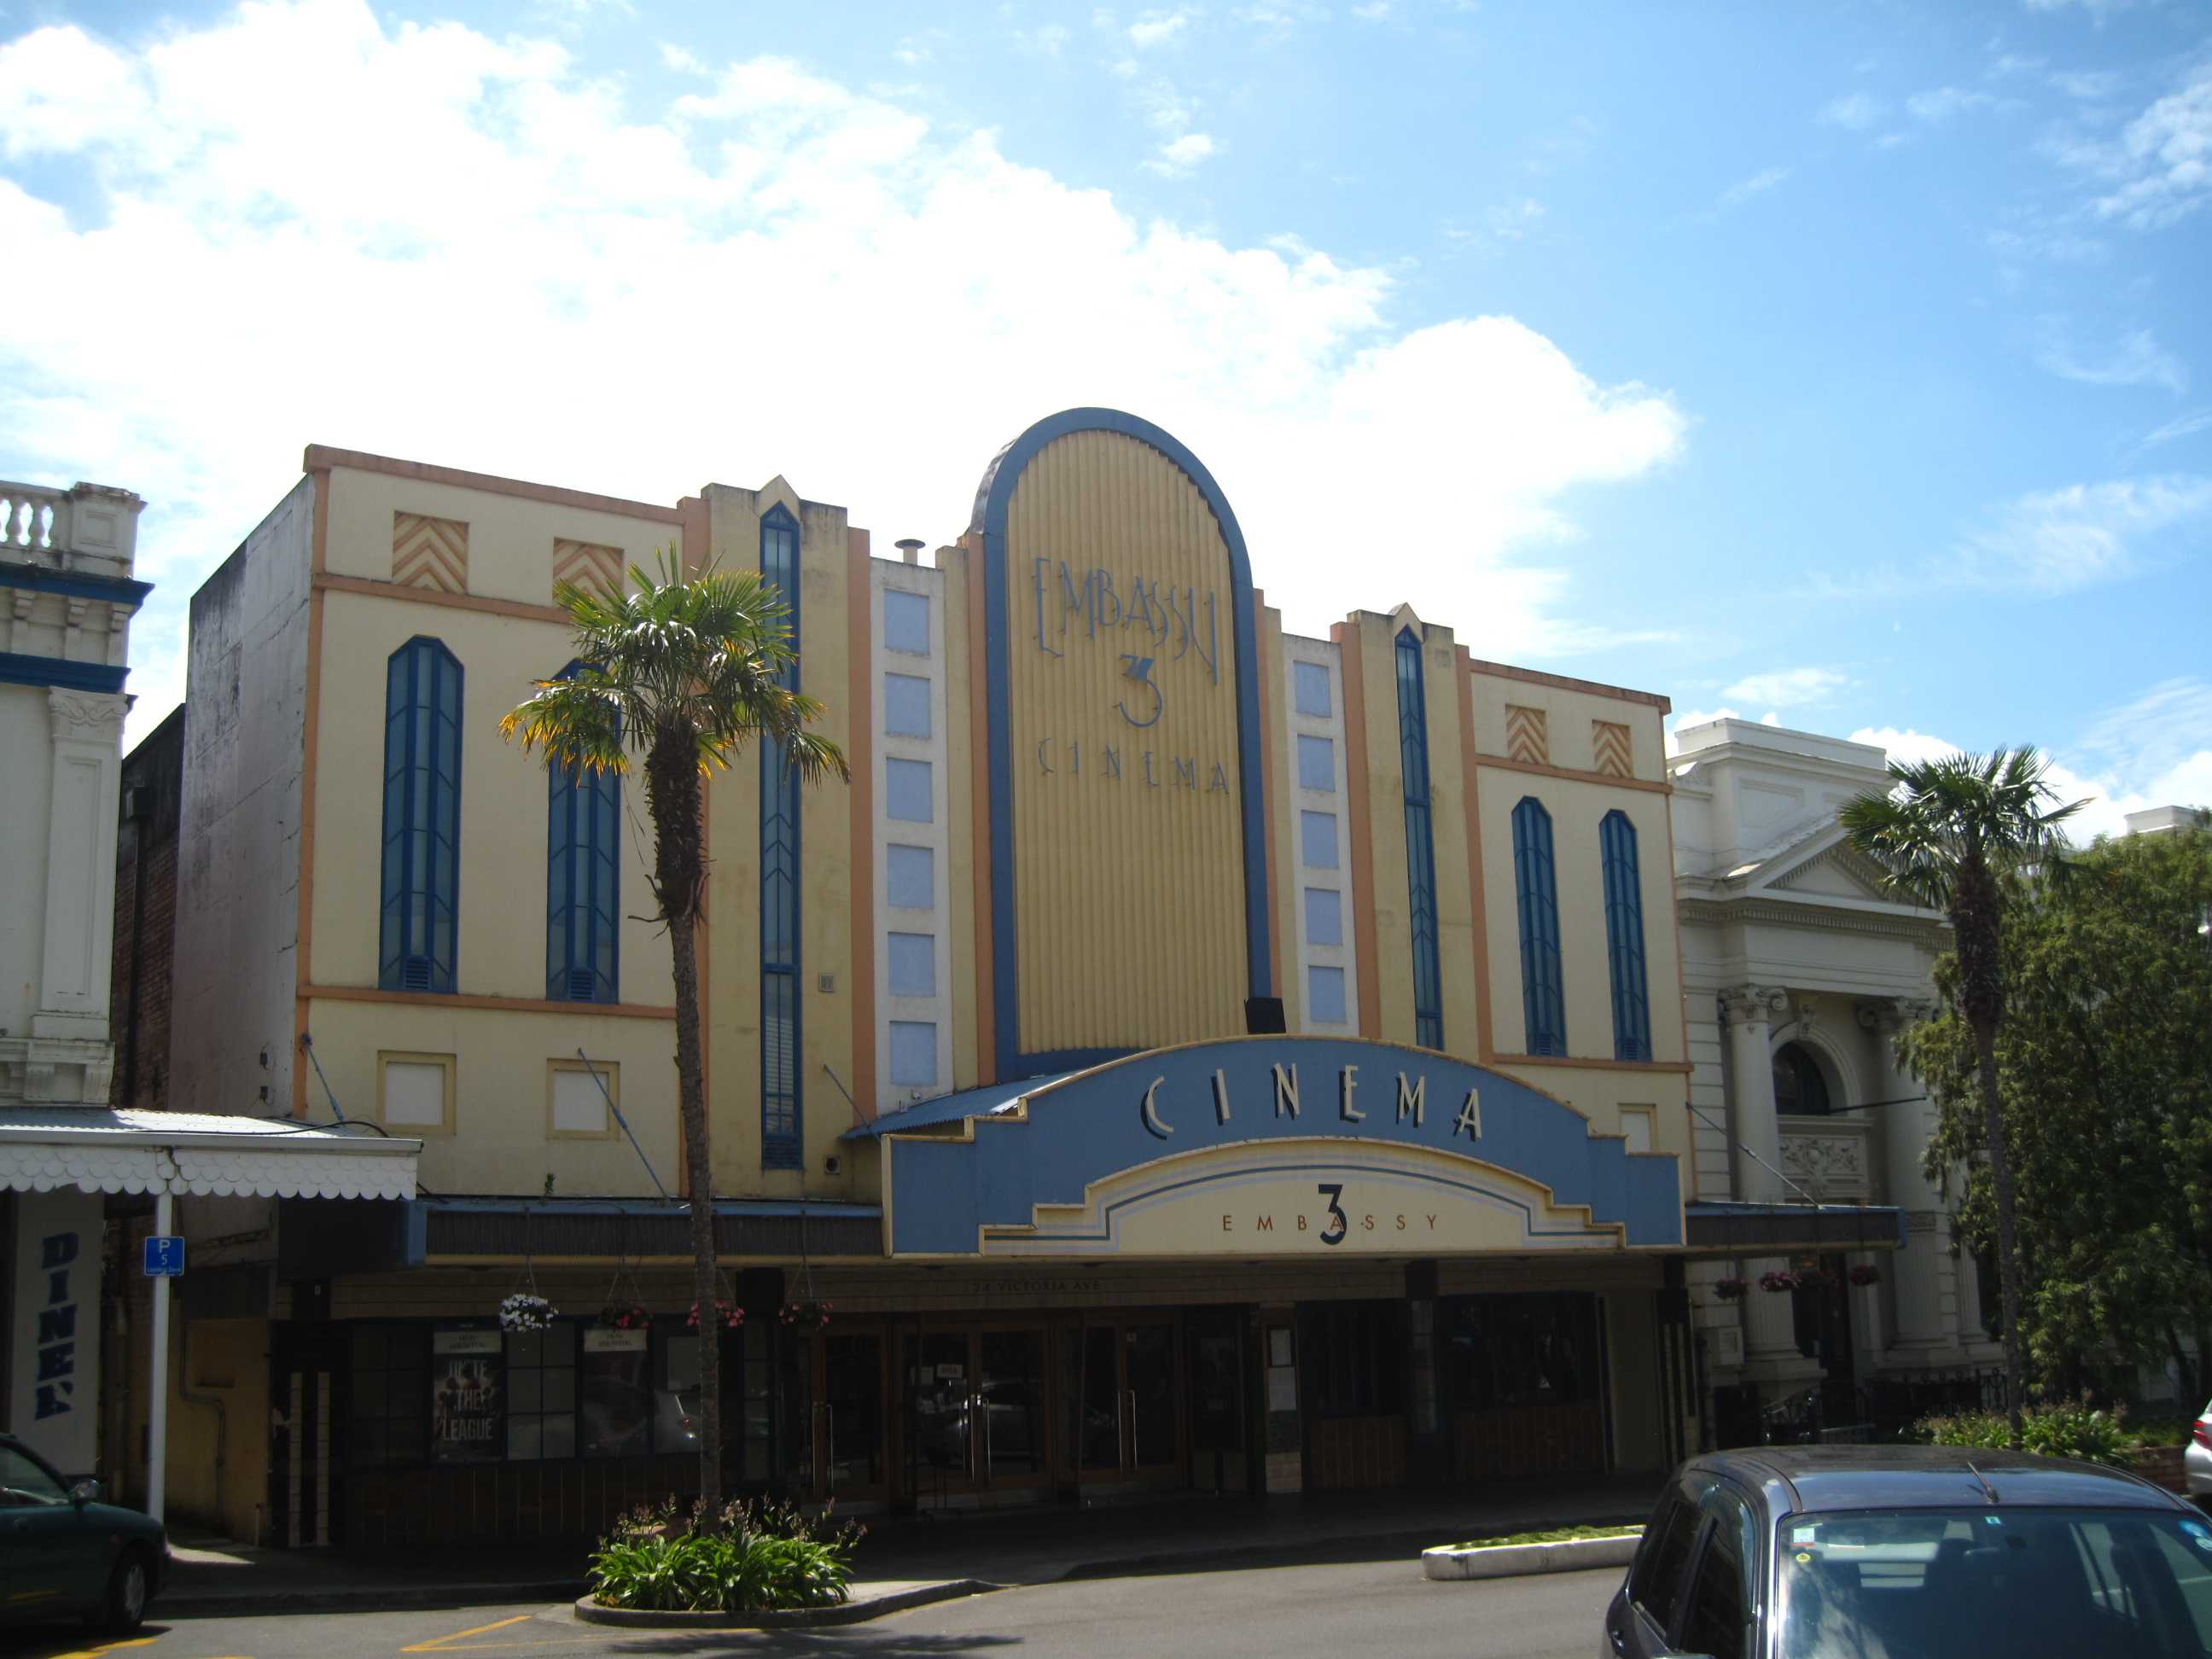 Wanganui Cinema